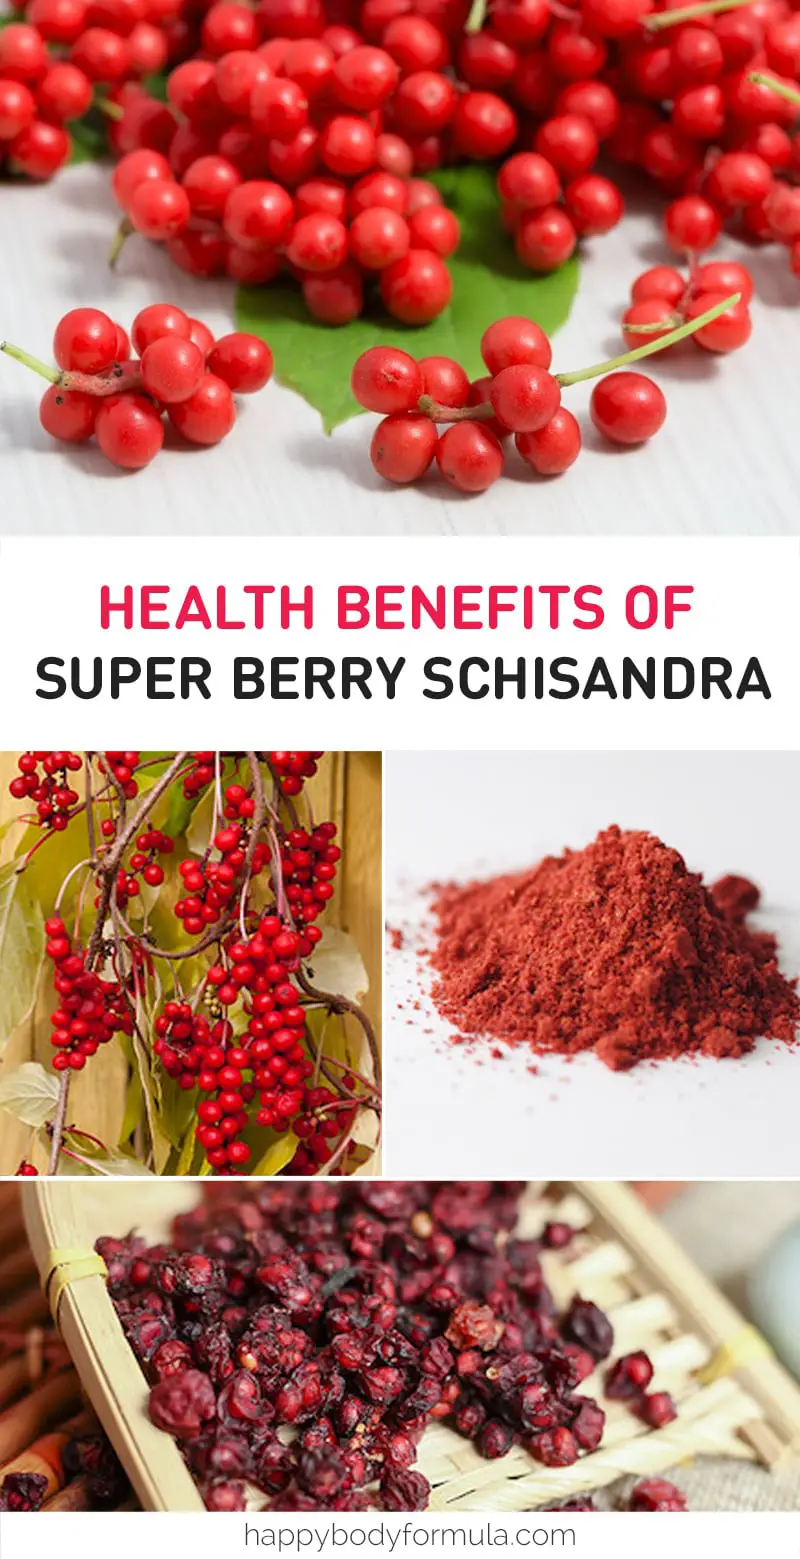 10 Benefits of Super Berry Schisandra You Never Knew | Happybodyformula.com